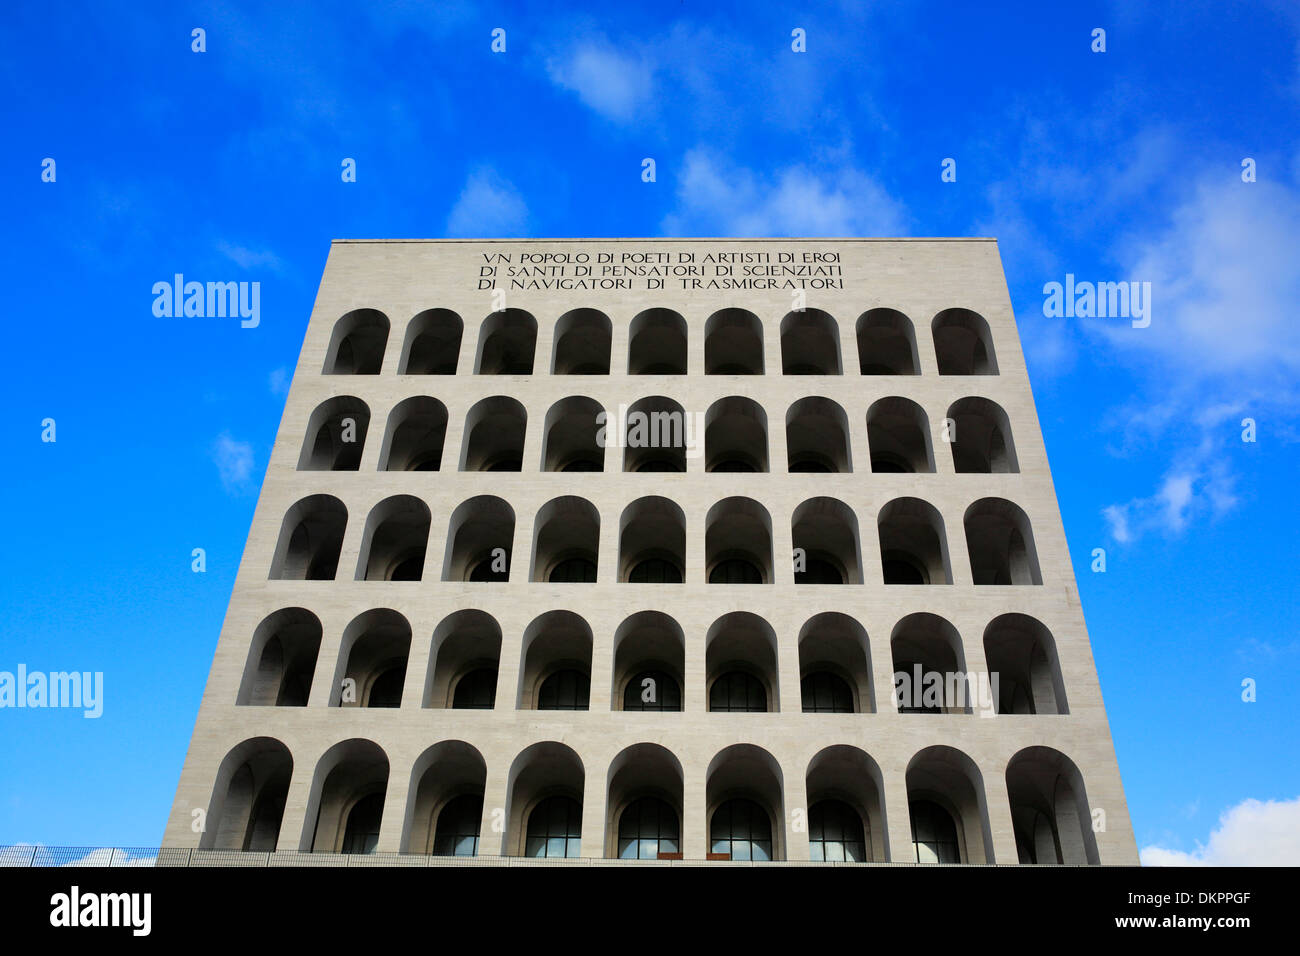 Palazzo della Civilta Italiana, (Colosseo Quadrato), EUR, Rome, Italy Stock Photo